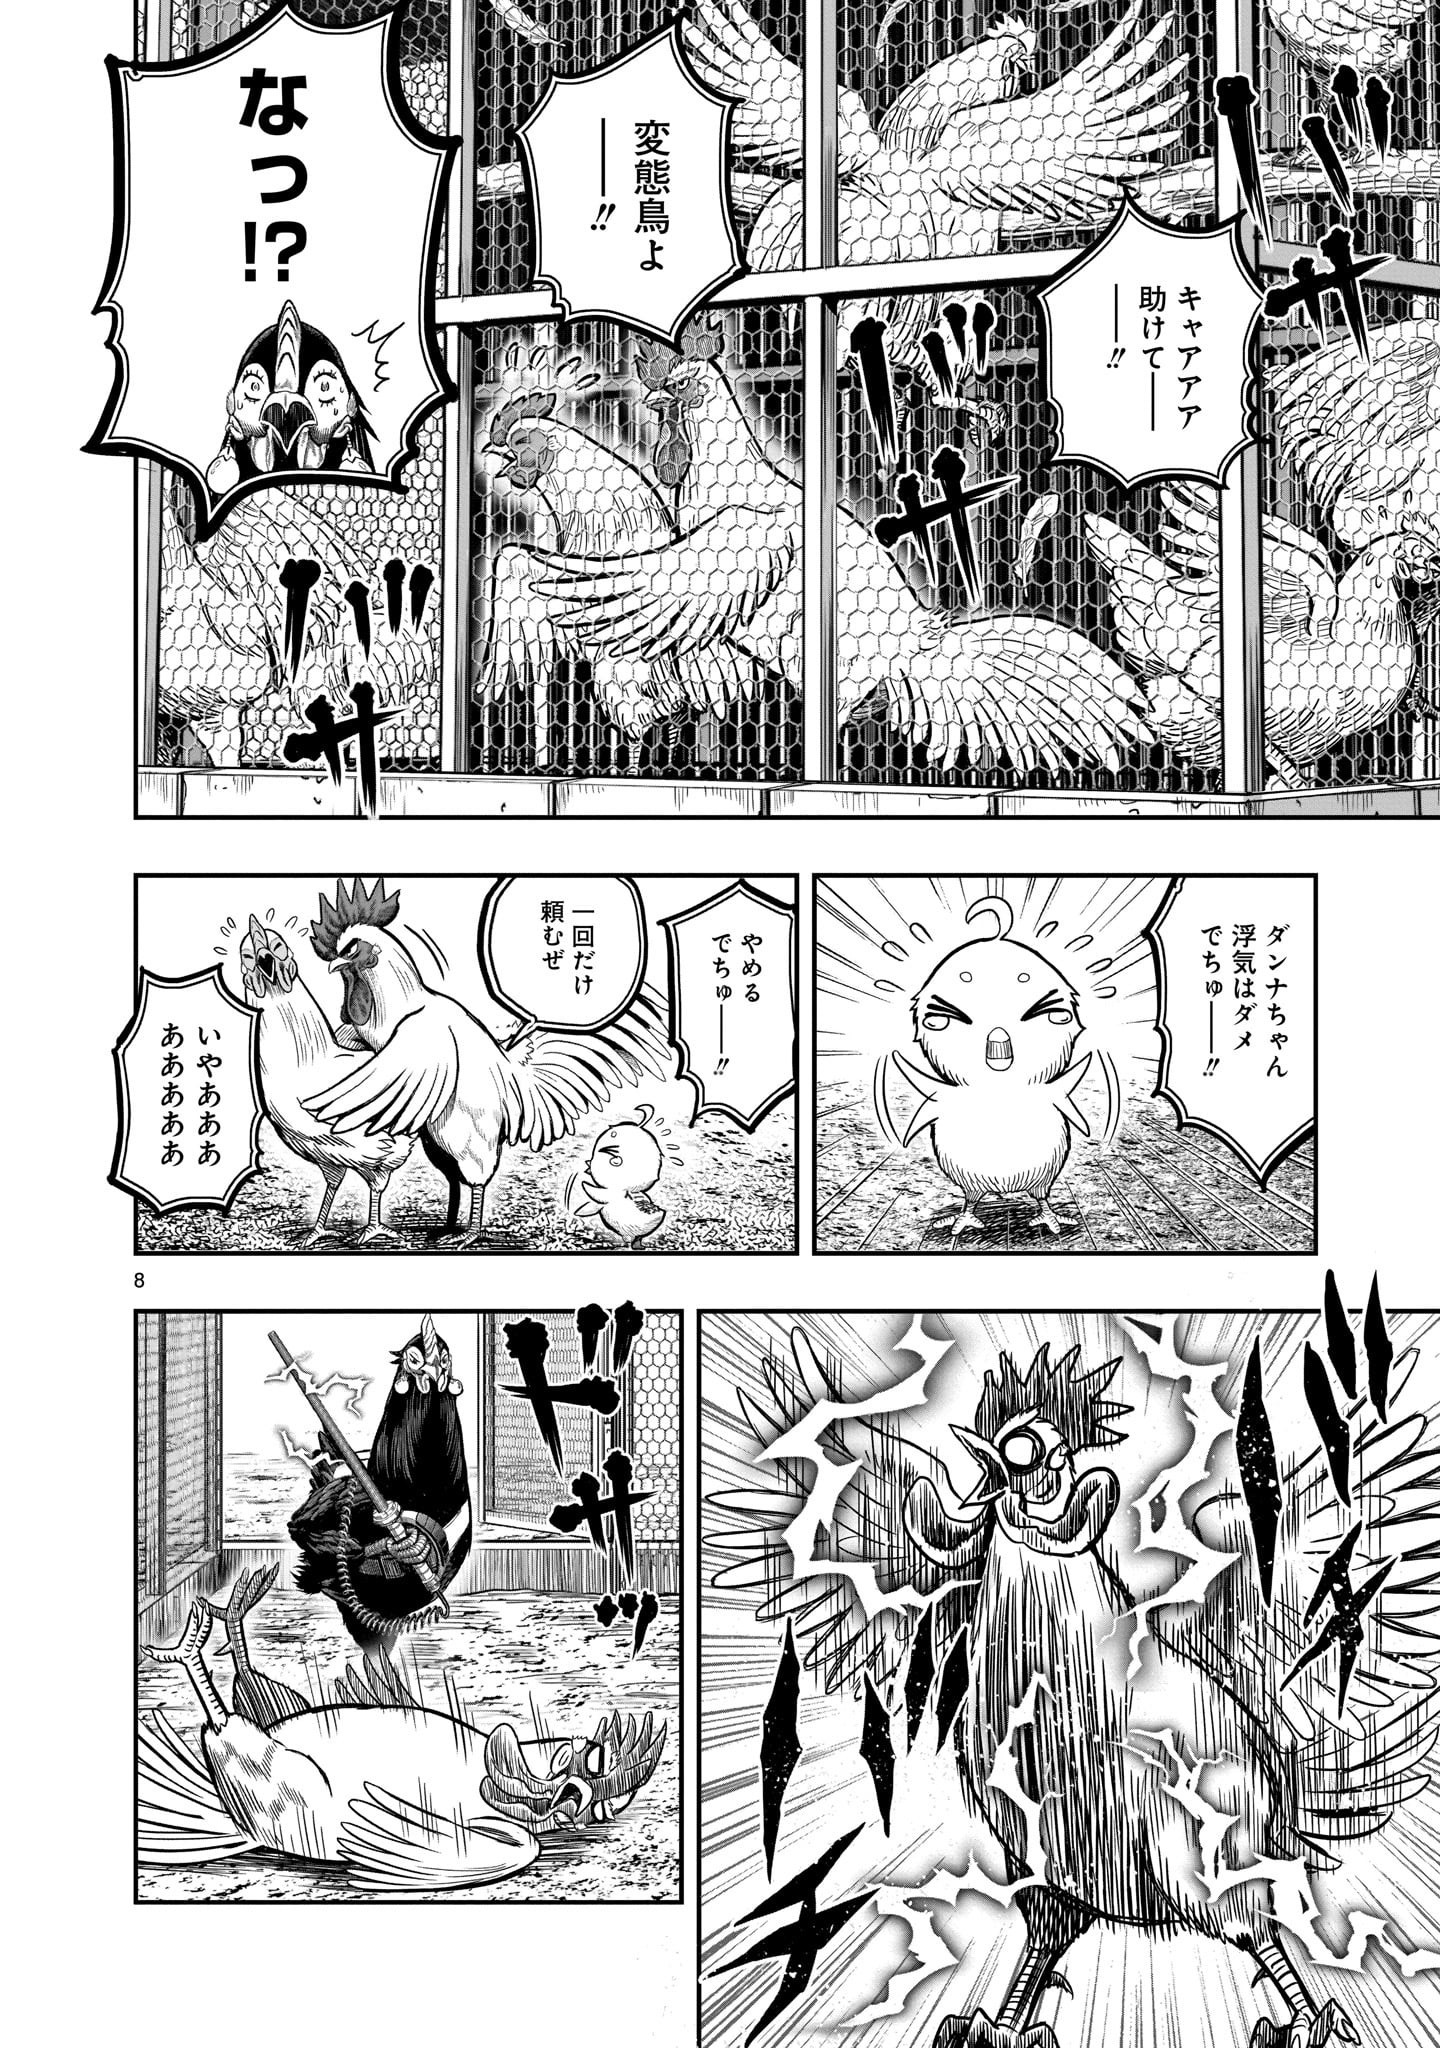 Saint Seiya: Meiou Iden – Dark Wing 第11話 - Page 8